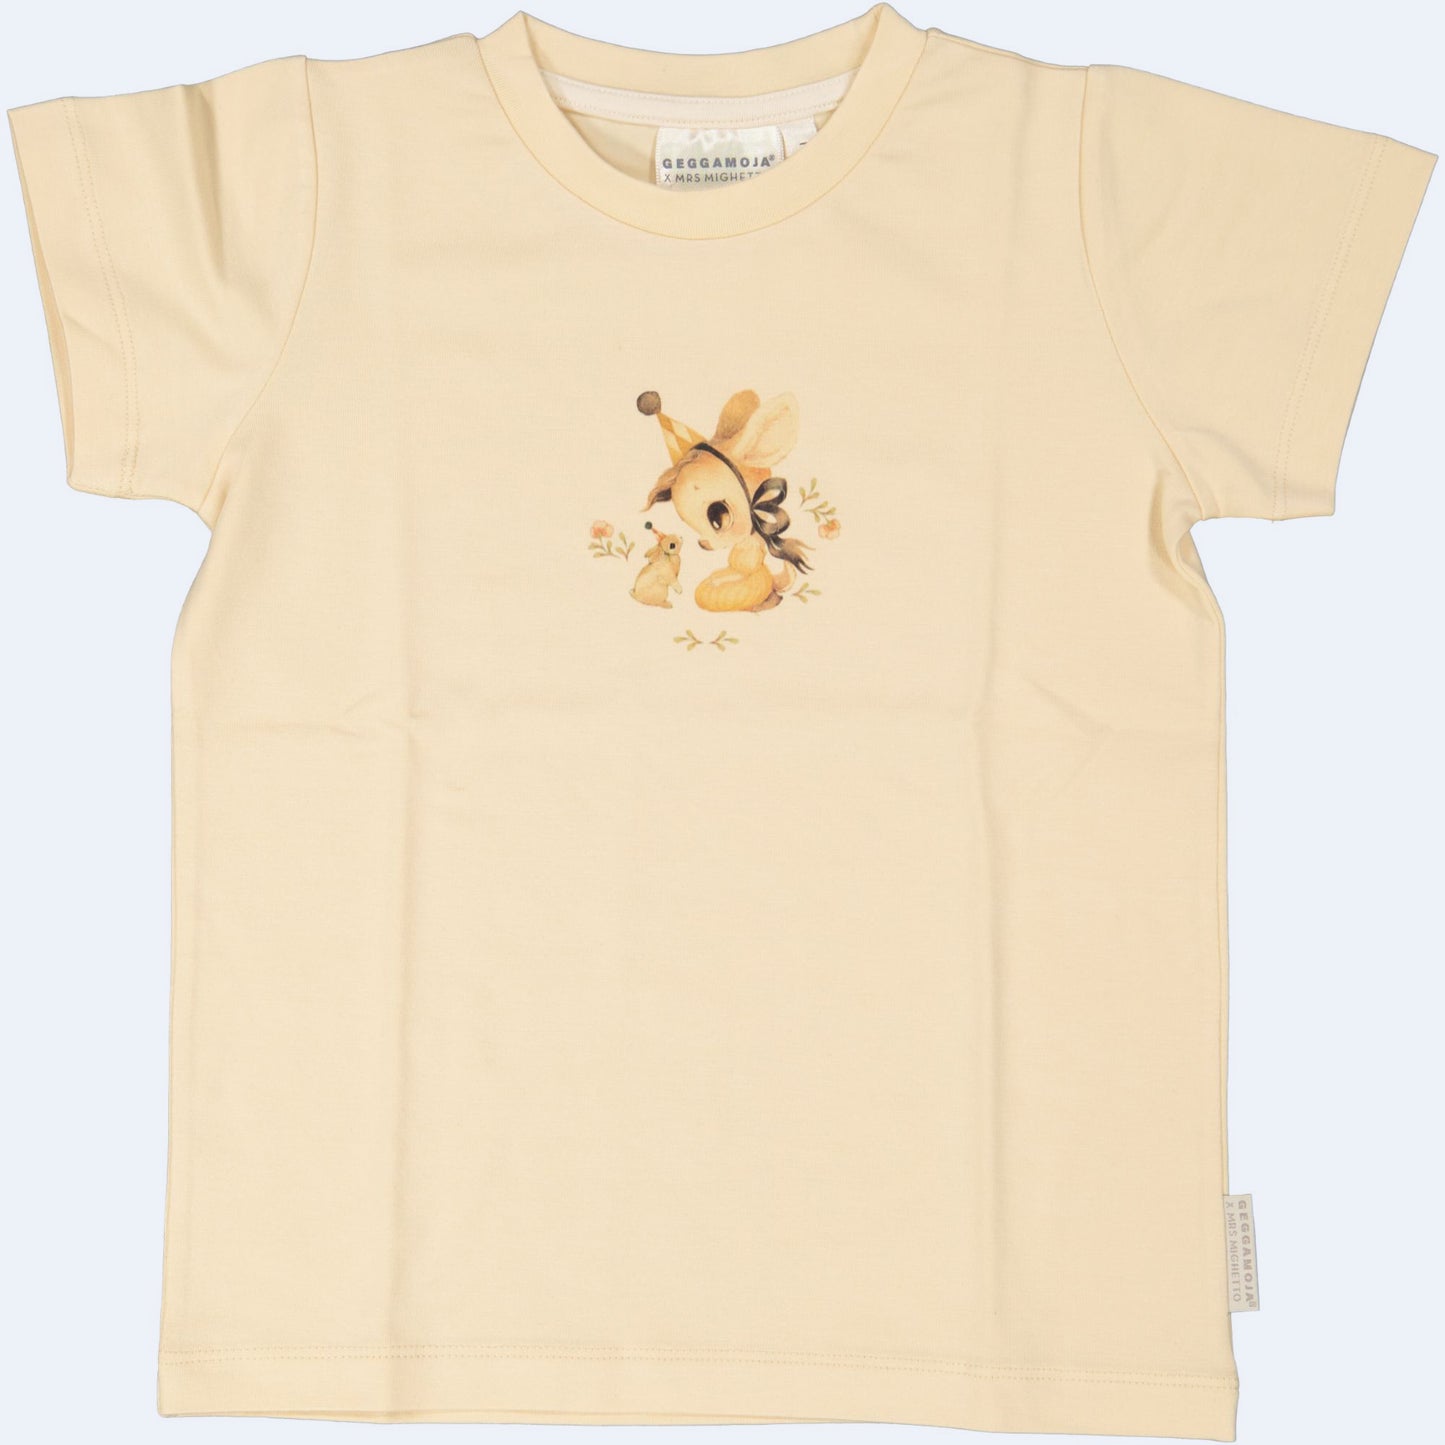 Geggamoja ® MRS MIGHETTO "STELLA" Kids T-Shirt in Soft Bamboo/Organic Cotton